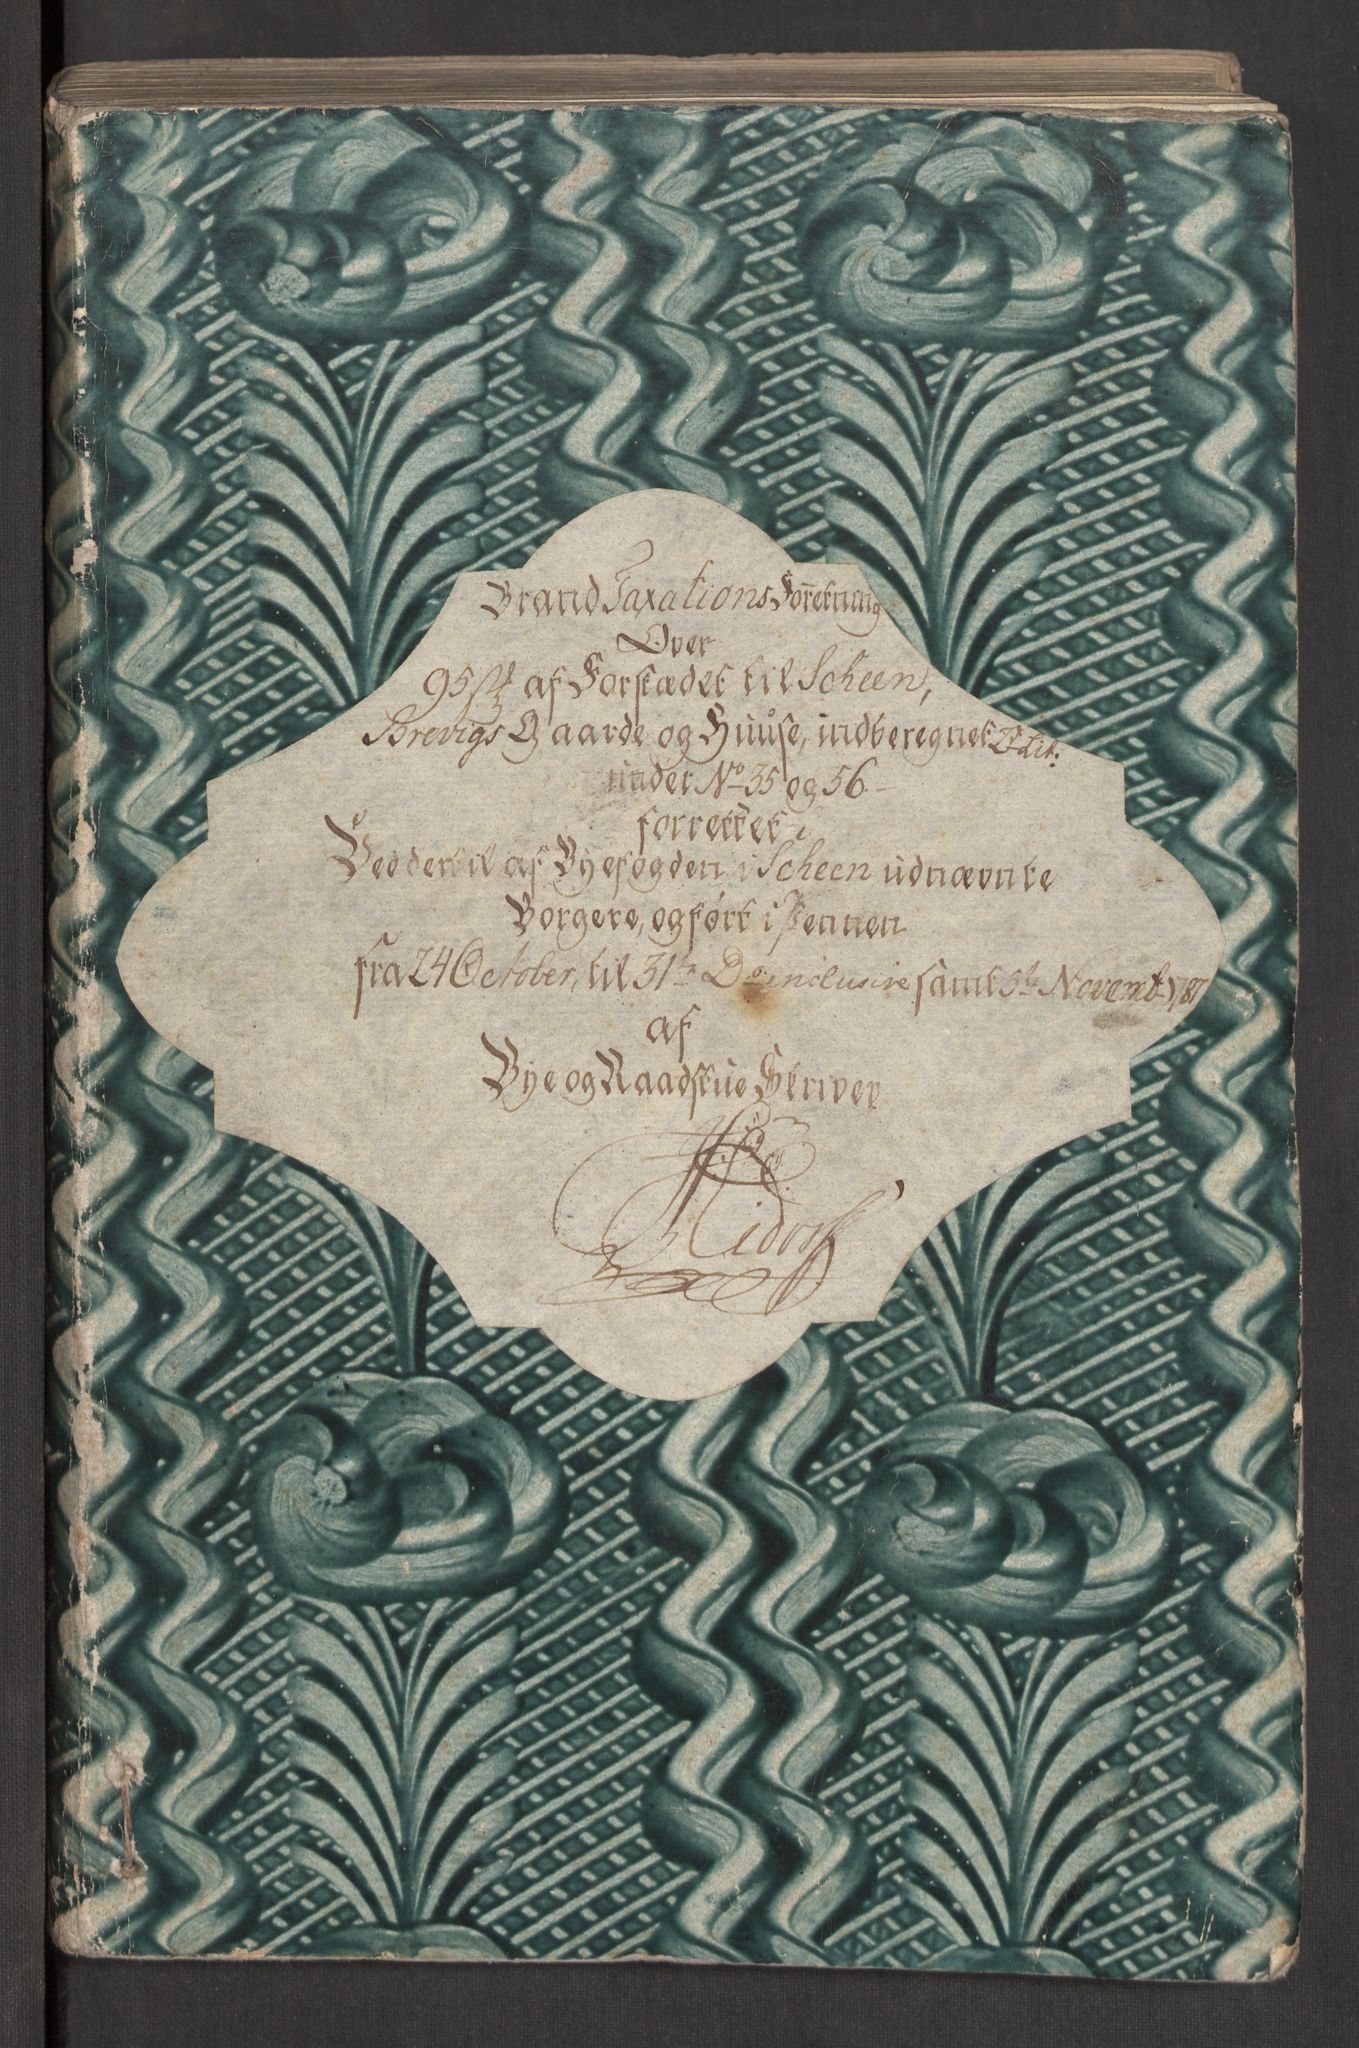 Kommersekollegiet, Brannforsikringskontoret 1767-1814, RA/EA-5458/F/Fa/L0011/0002: Brevik / Branntakstprotokoll, 1787